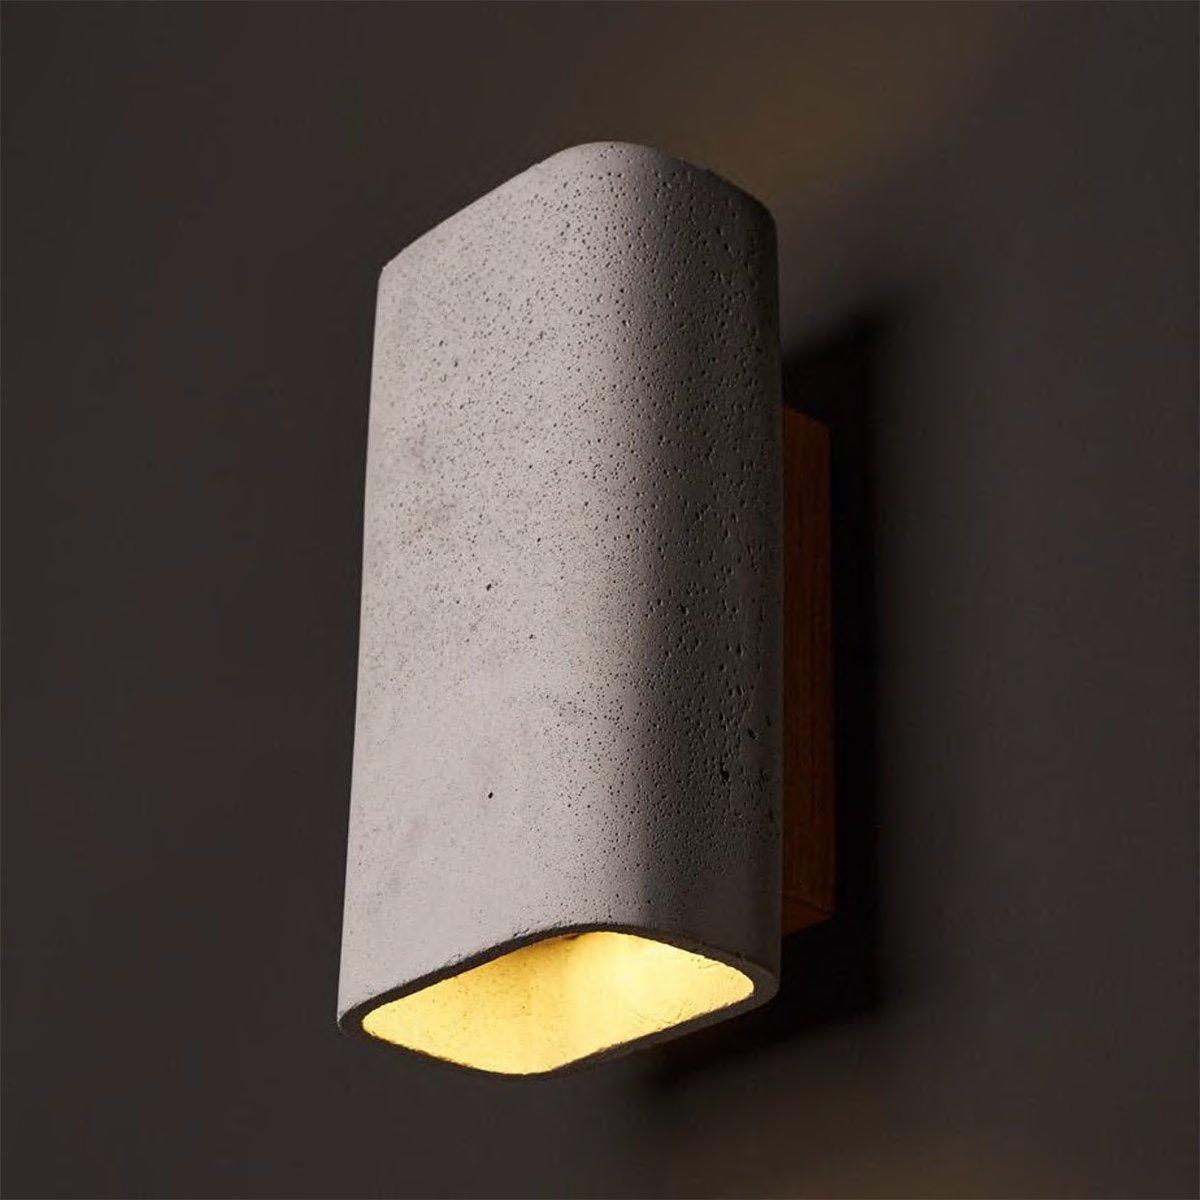 ConTeak Outdoor Wall Lamp - WOO .Design